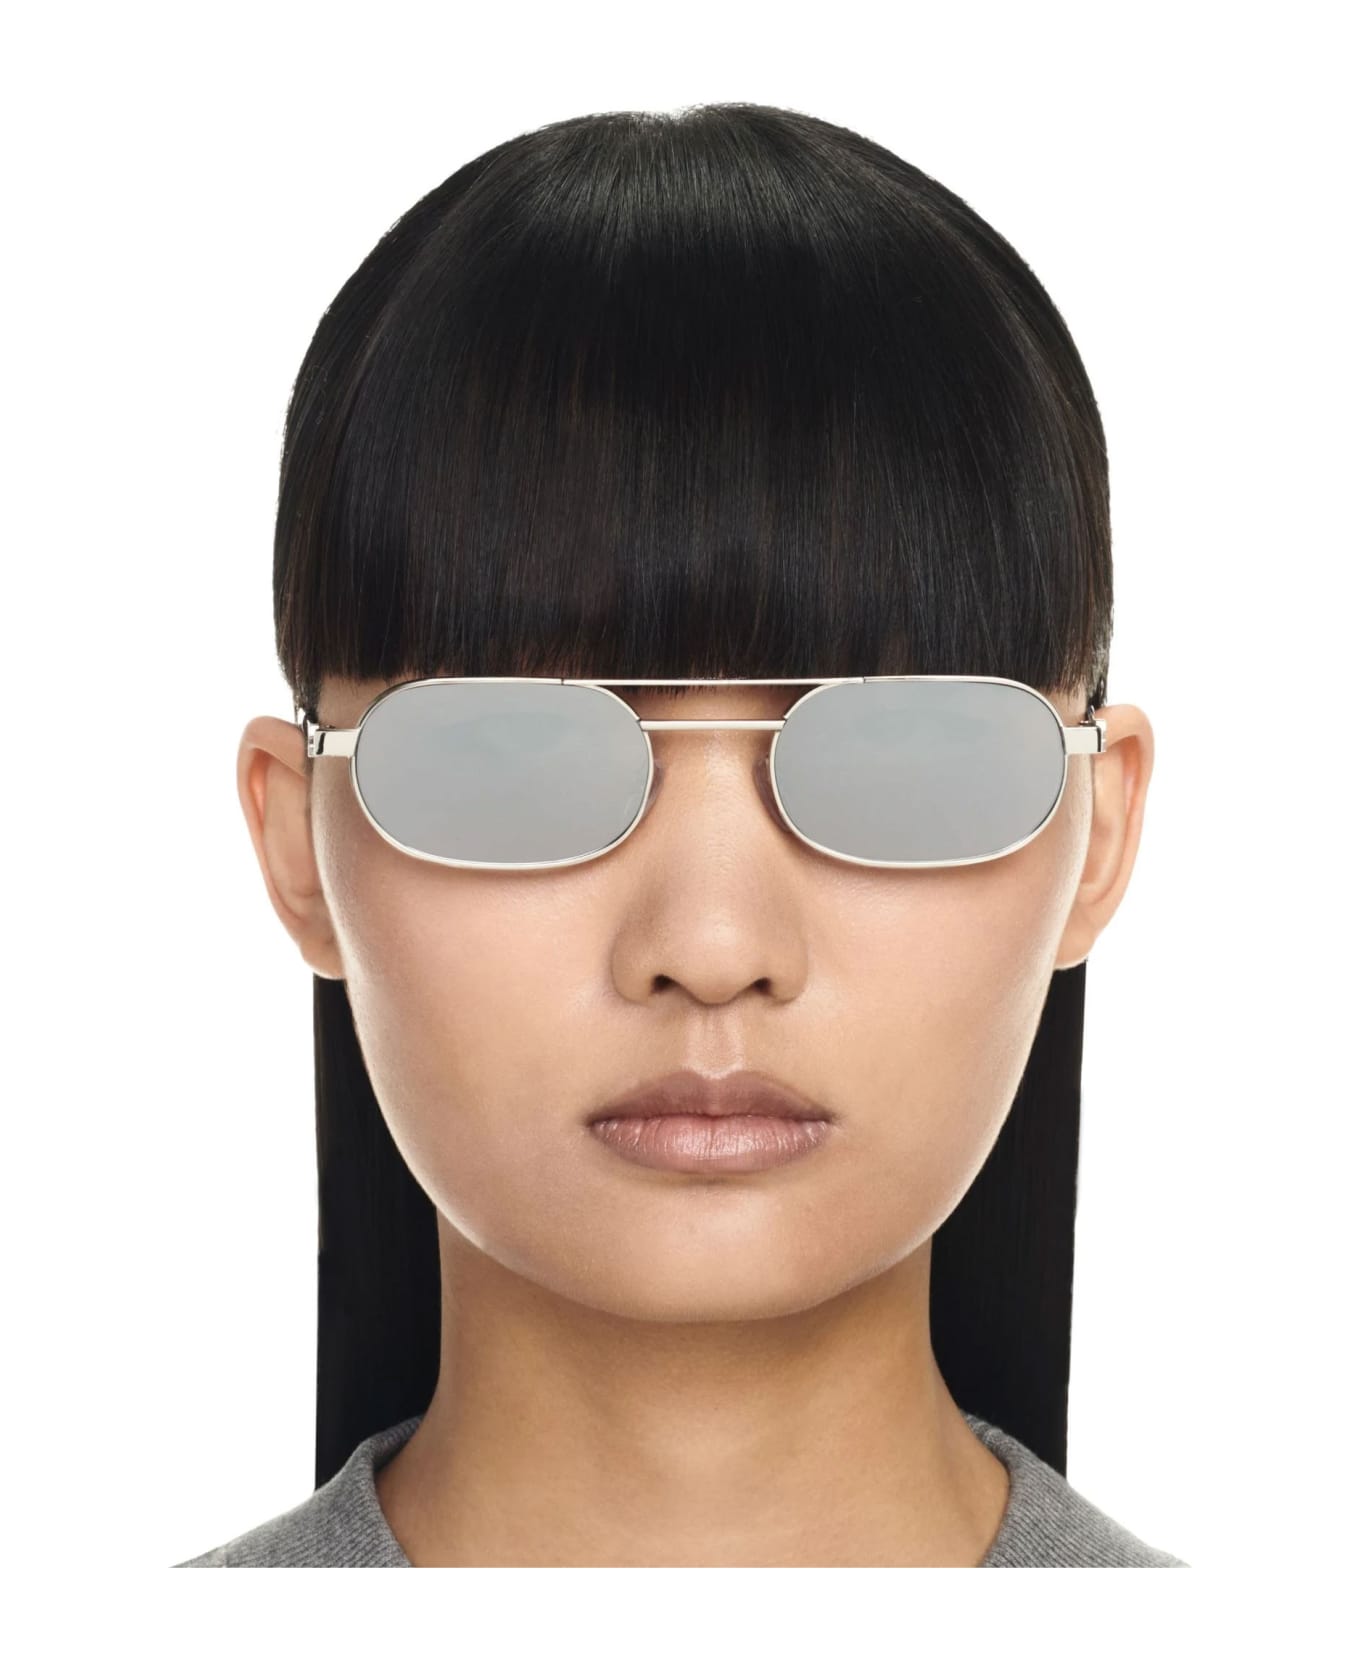 Off-White Sunglasses - Silver/Silver